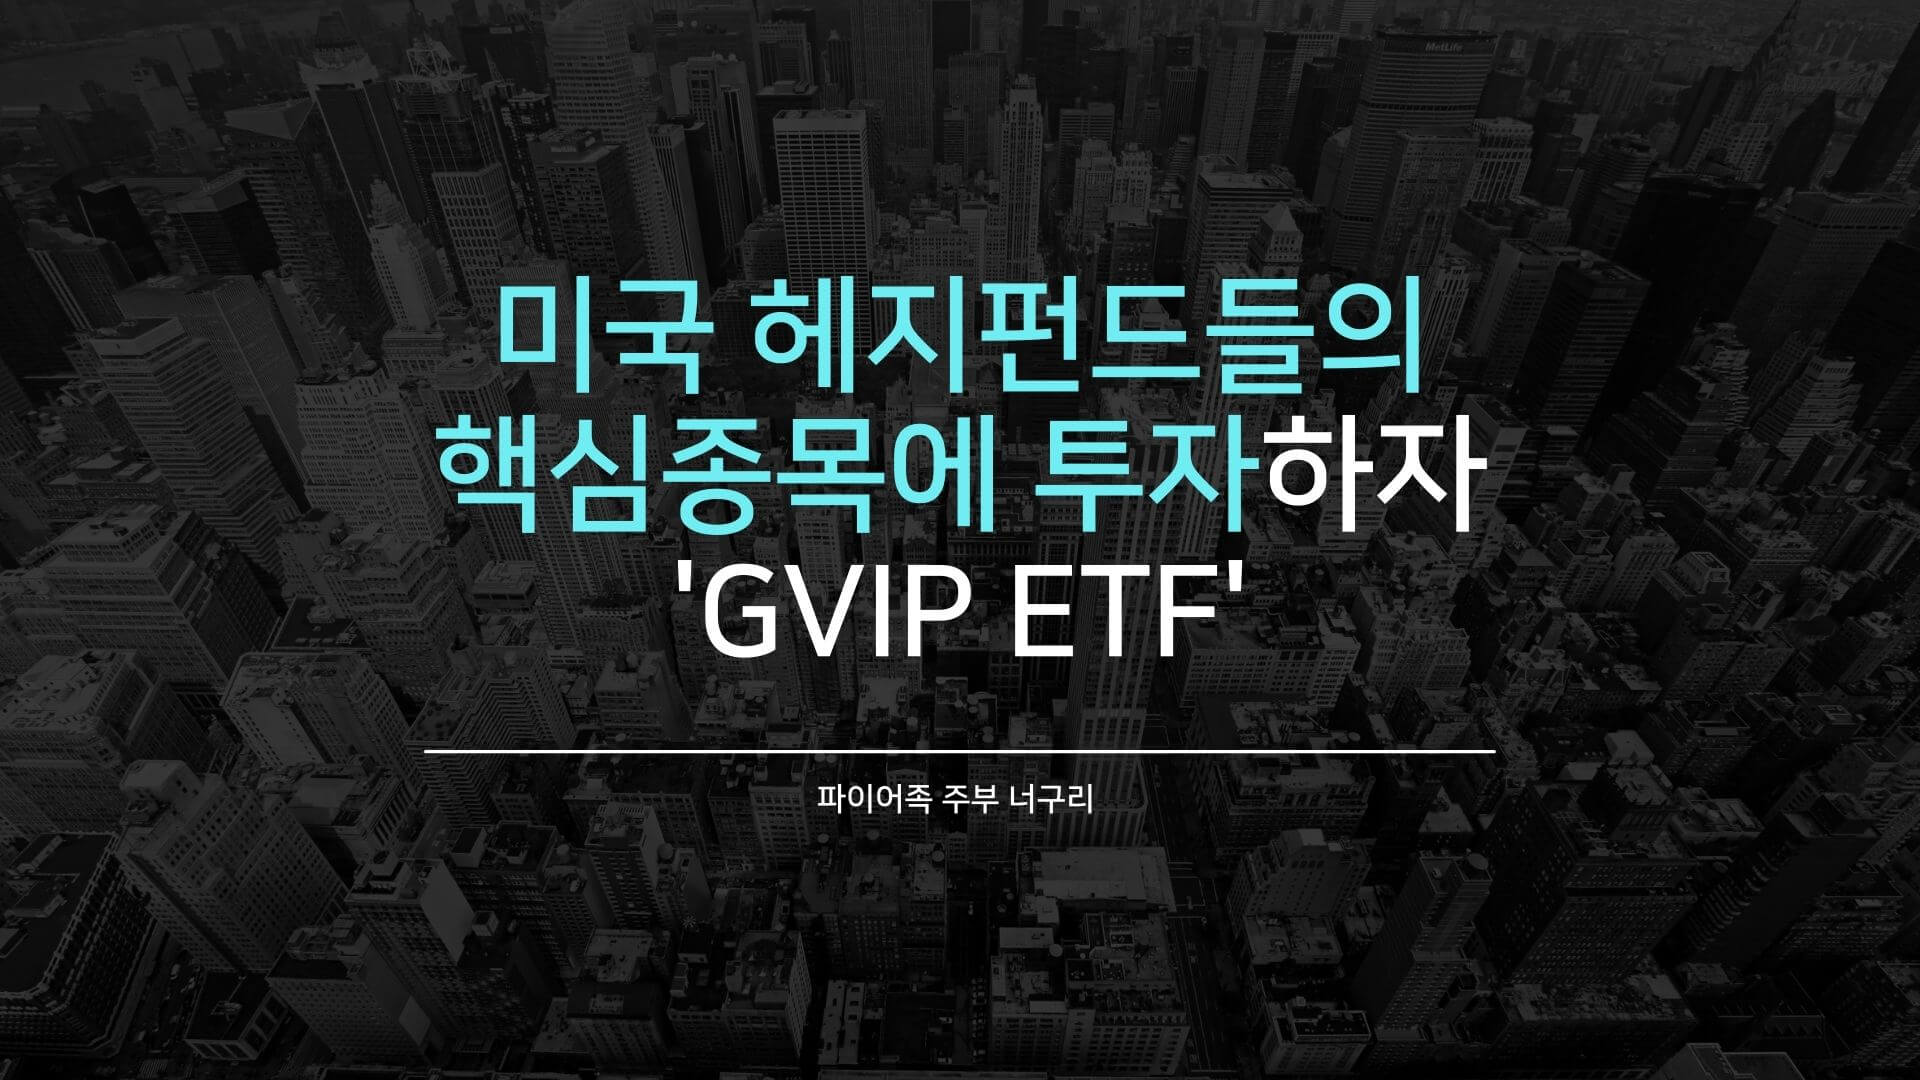 미국 헤지펀드들의 핵심종목에 투자하자 - GVIP ETF